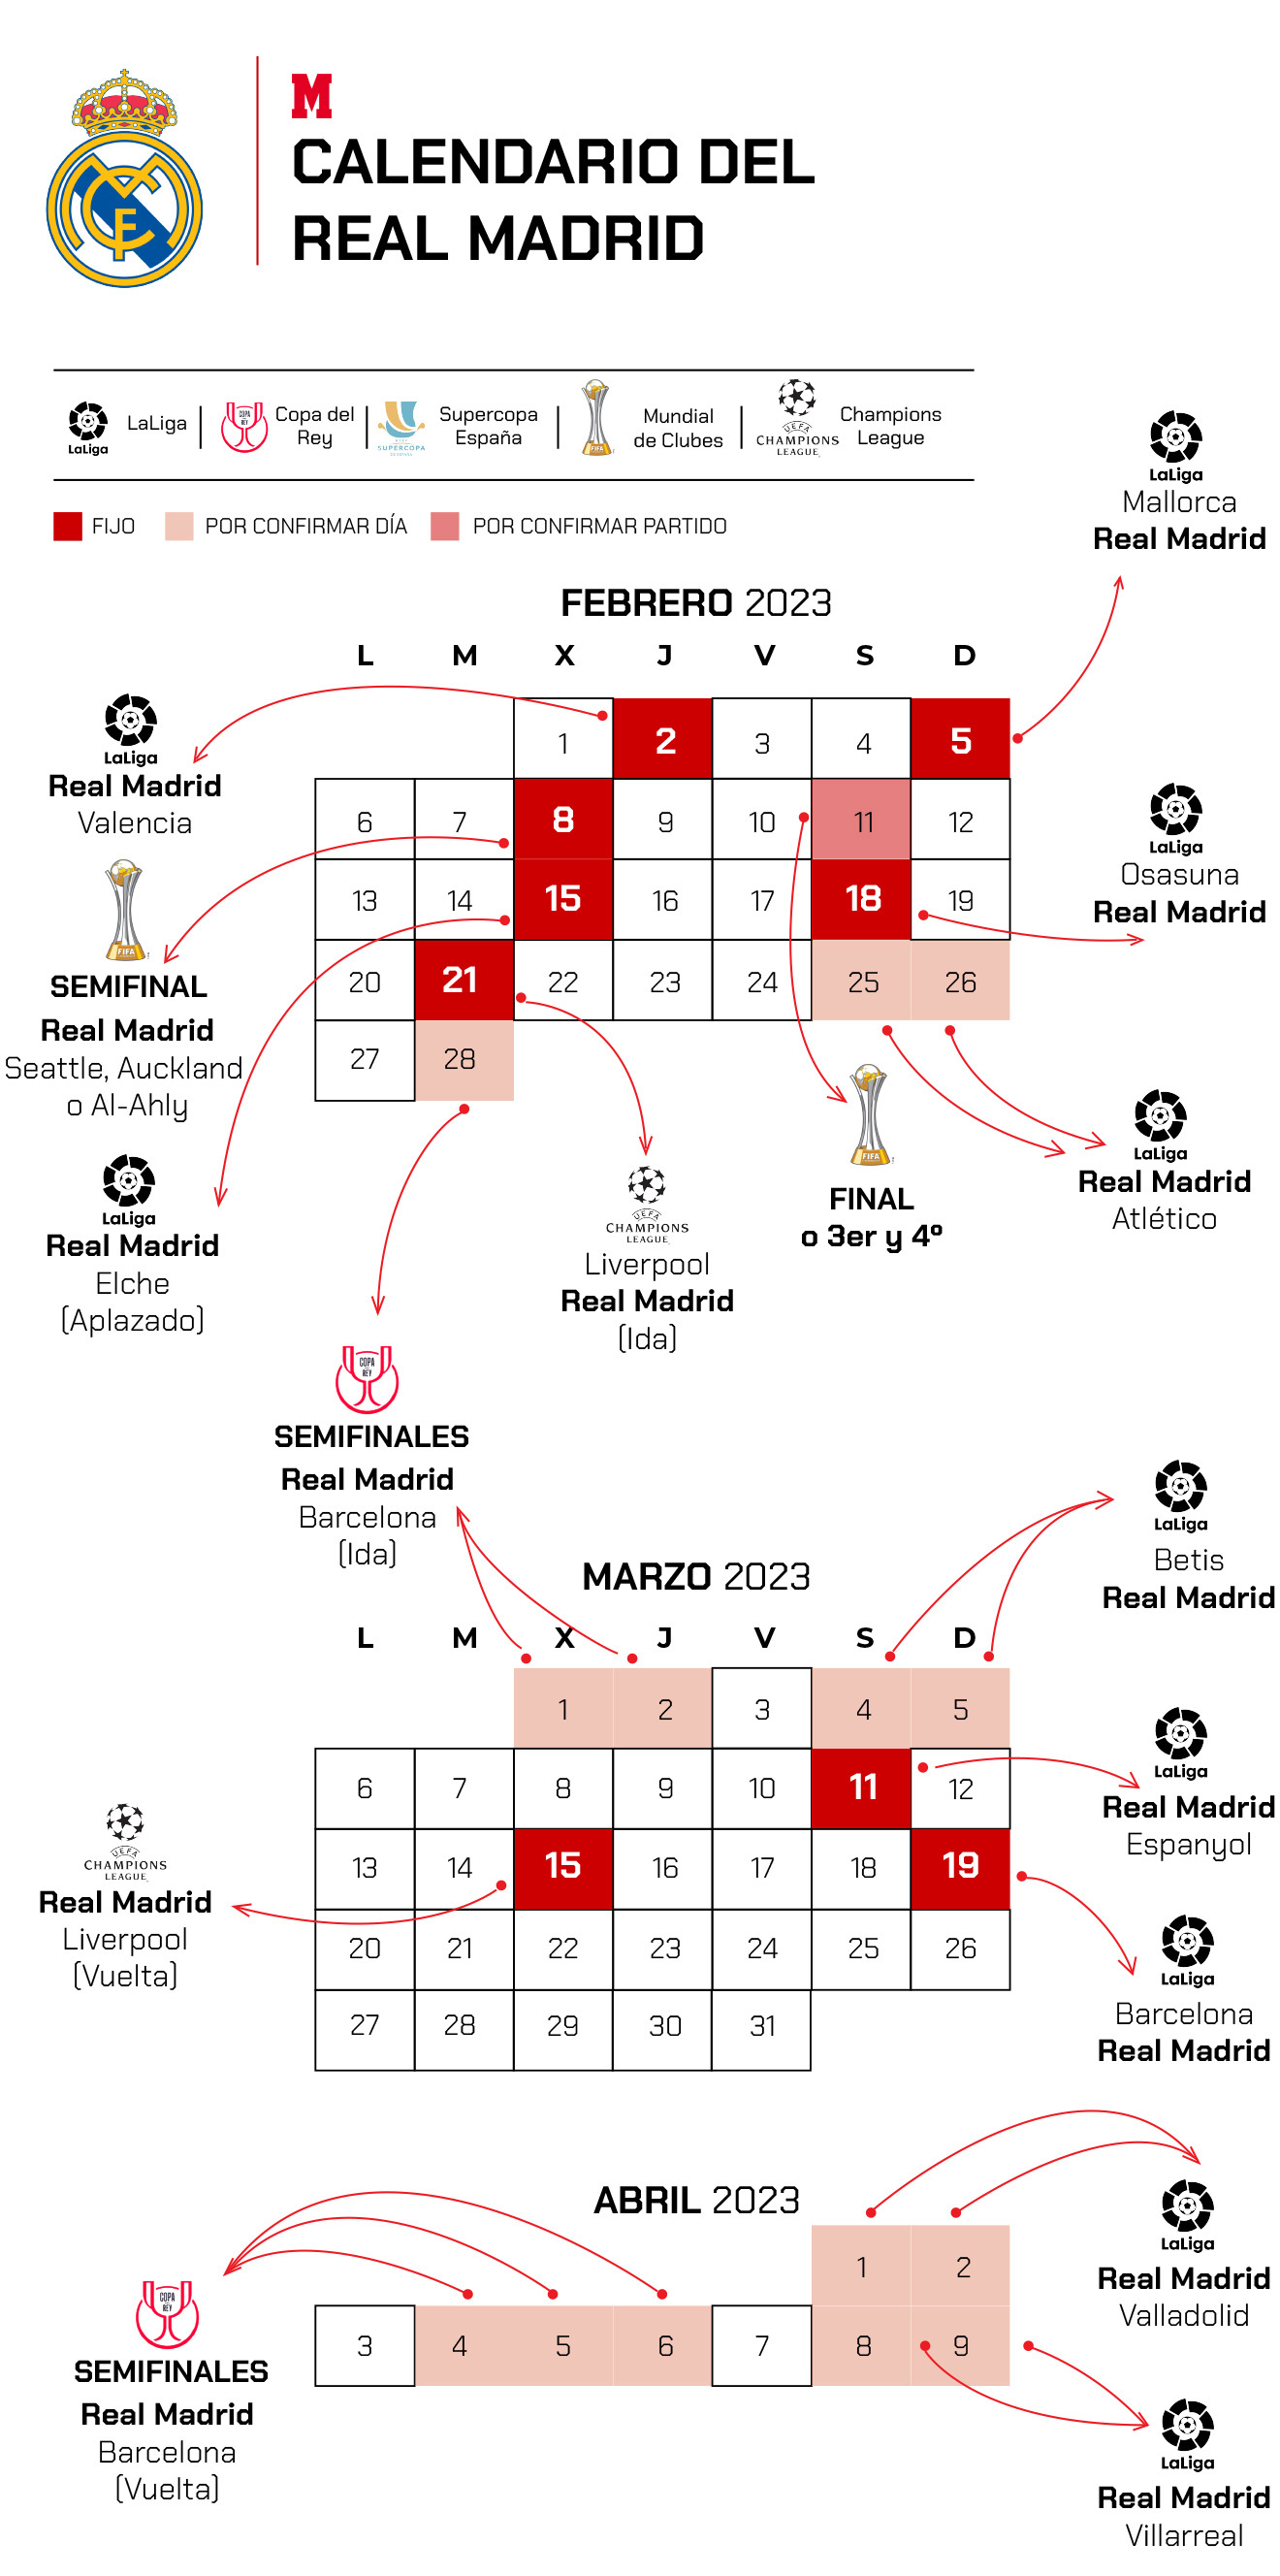 Ancelotti y la locura del calendario del Madrid: "Si los jugadores se cansan, aqu cerramos..."